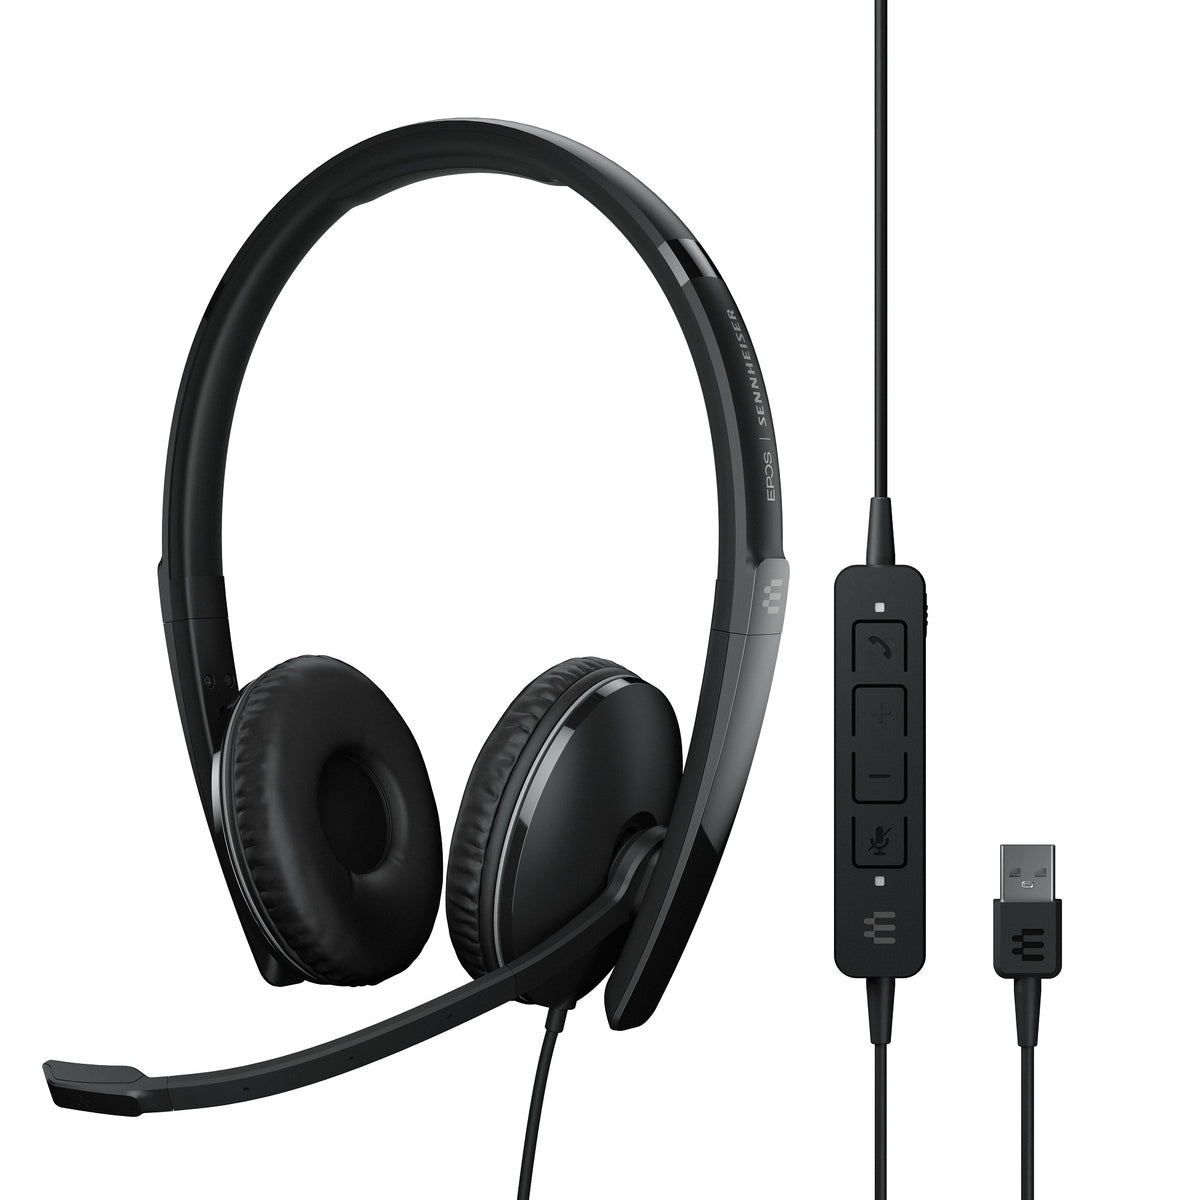 Headset EPOS SENNHEISER ADAPT 160 ANC USB Black Headphones